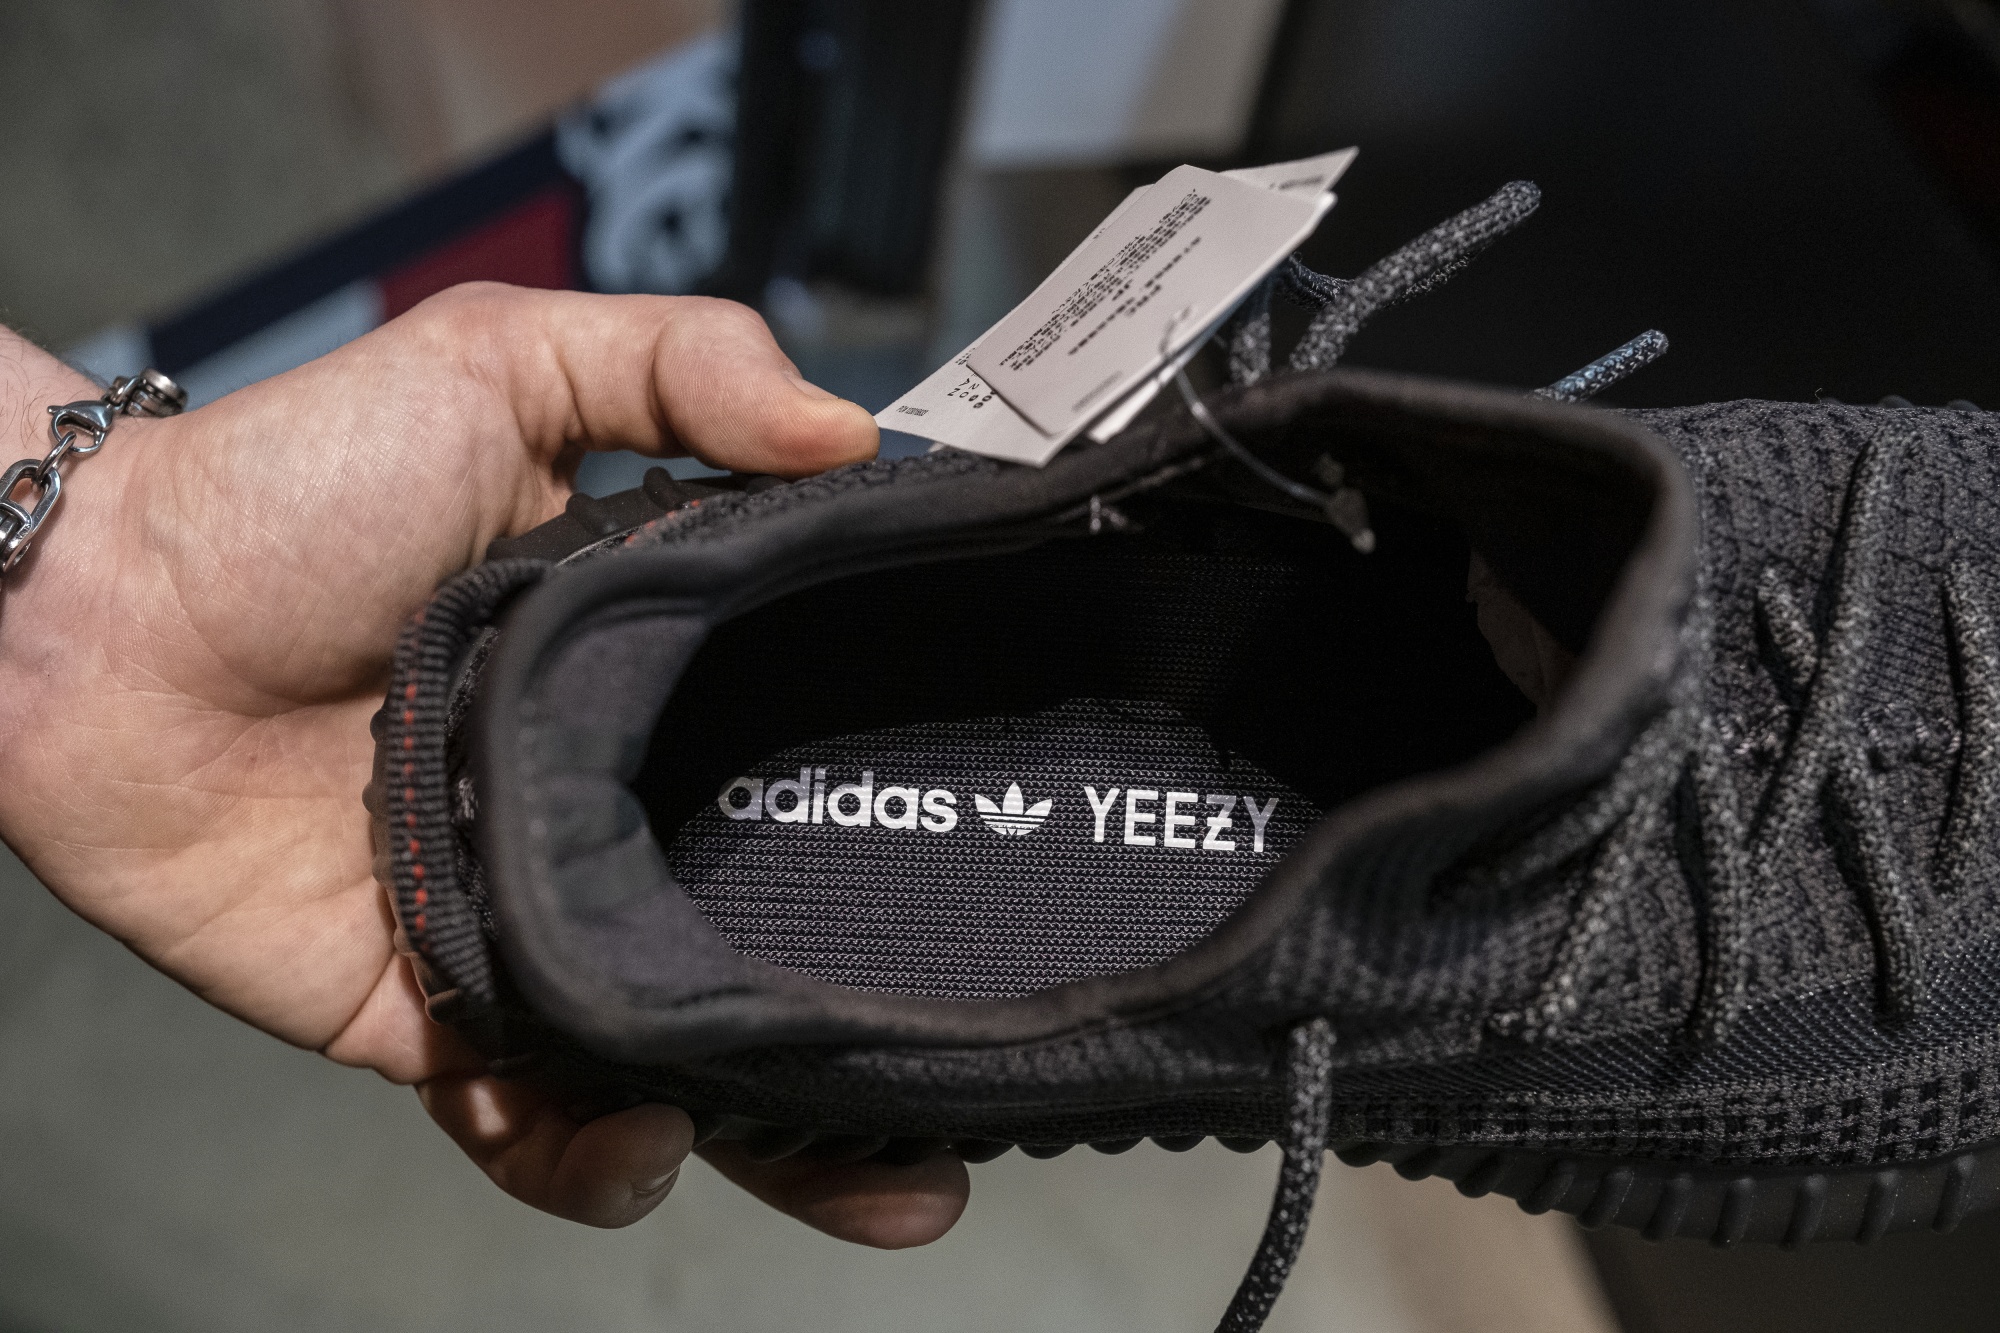 Co-Branded Rapper Sneakers : new Yeezy Boost 350